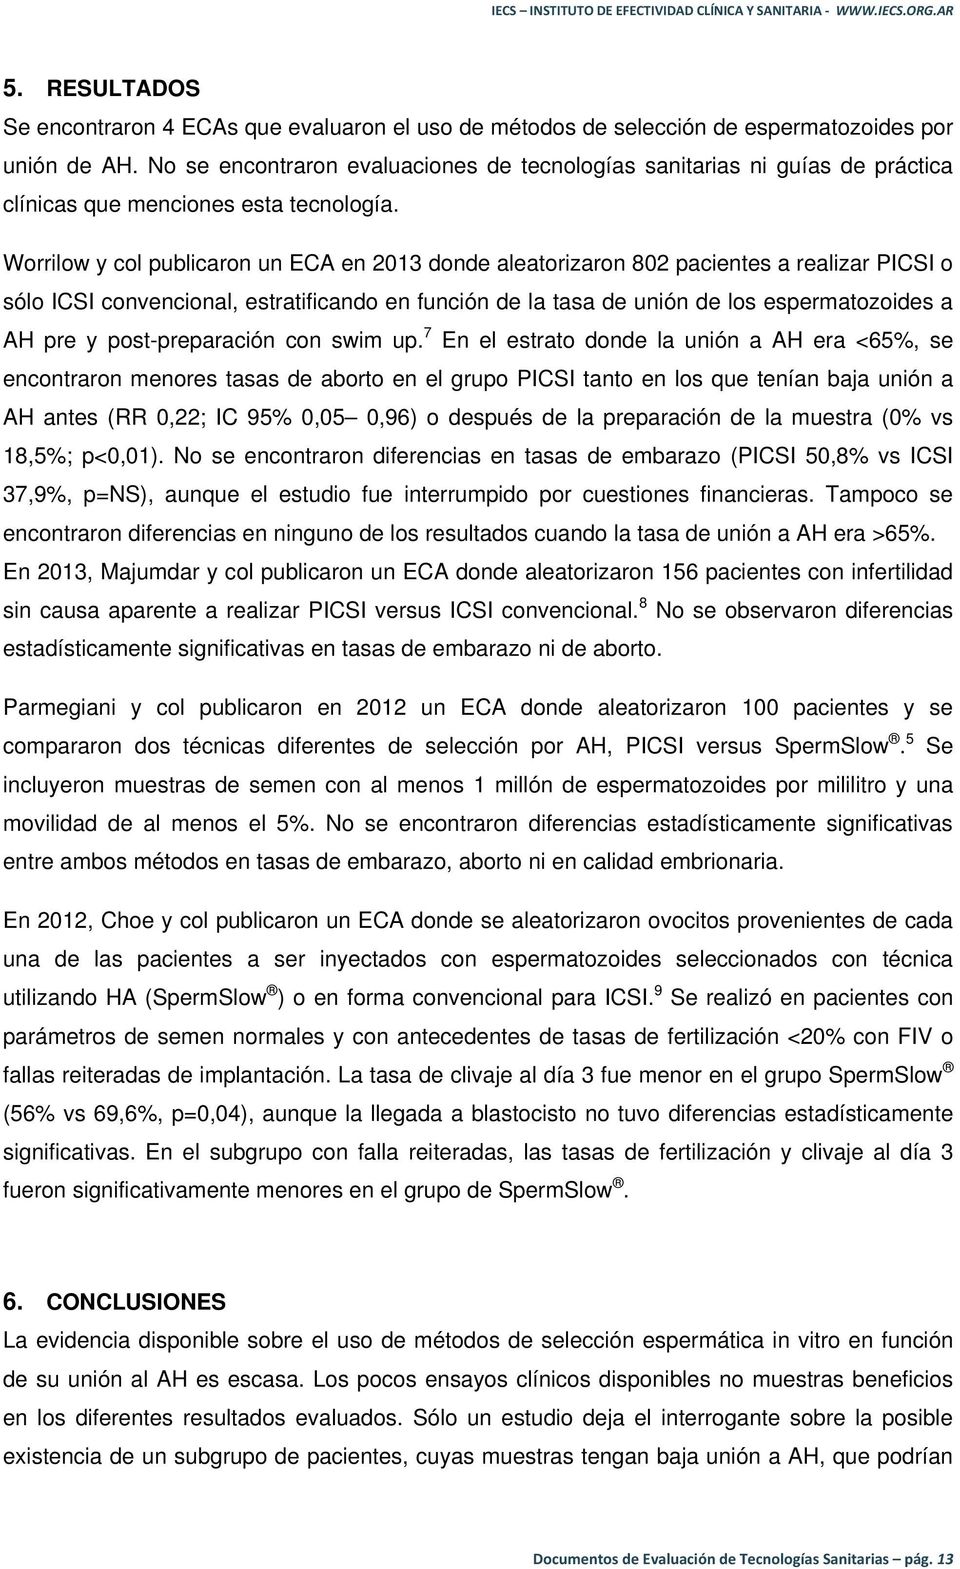 Worrilow y col publicaron un ECA en 2013 donde aleatorizaron 802 pacientes a realizar PICSI o sólo ICSI convencional, estratificando en función de la tasa de unión de los espermatozoides a AH pre y